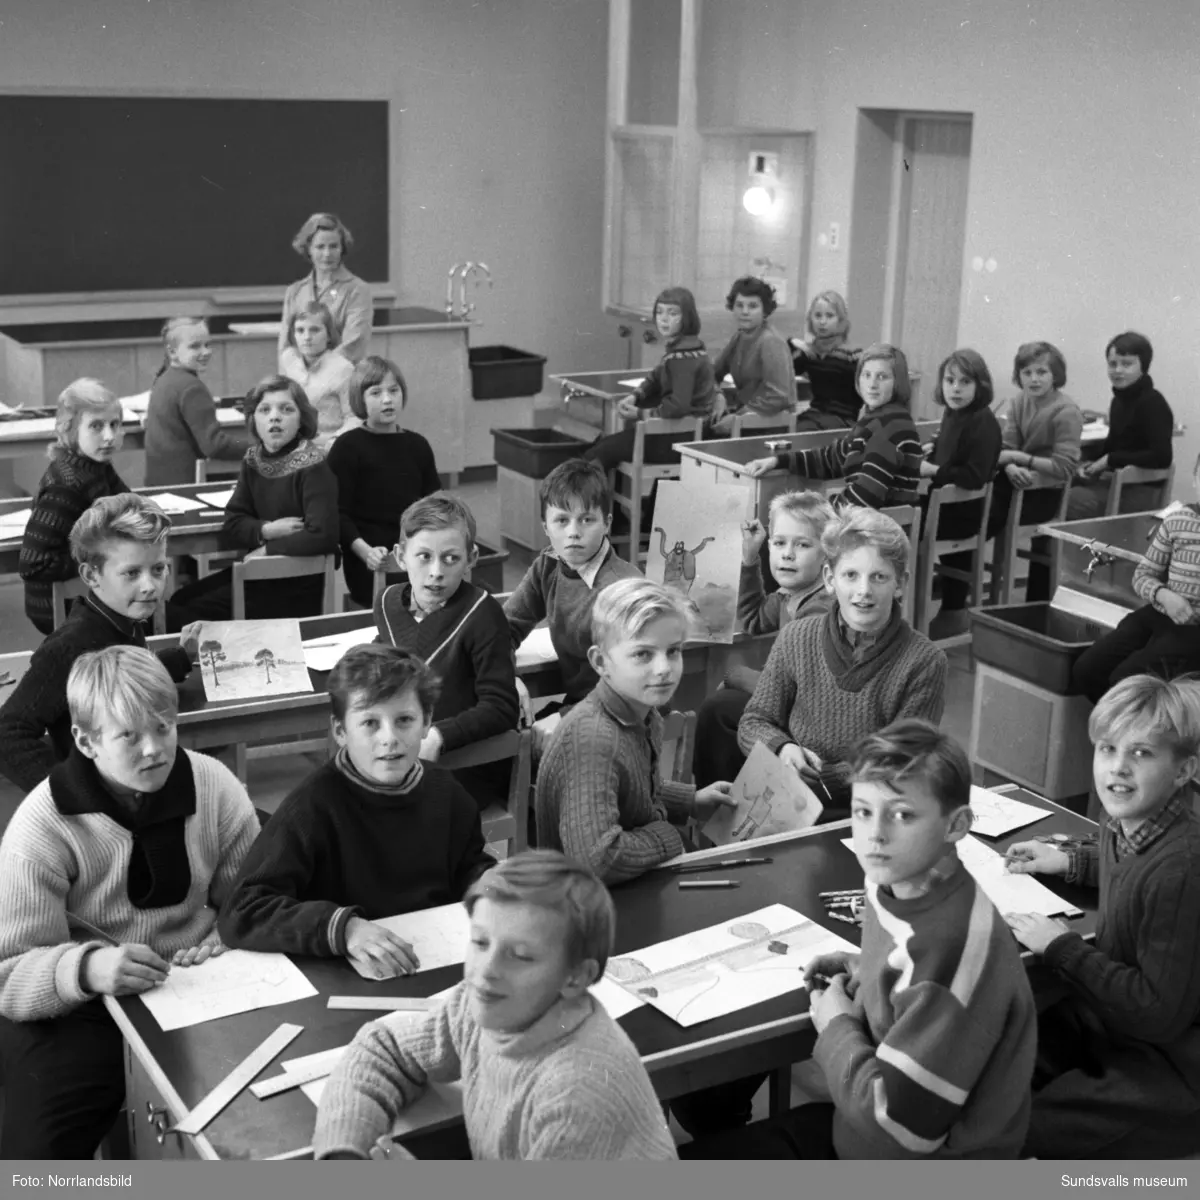 Interiörbilder med elever i Bergsåkers skola samt en bild på den tomma skolgården.